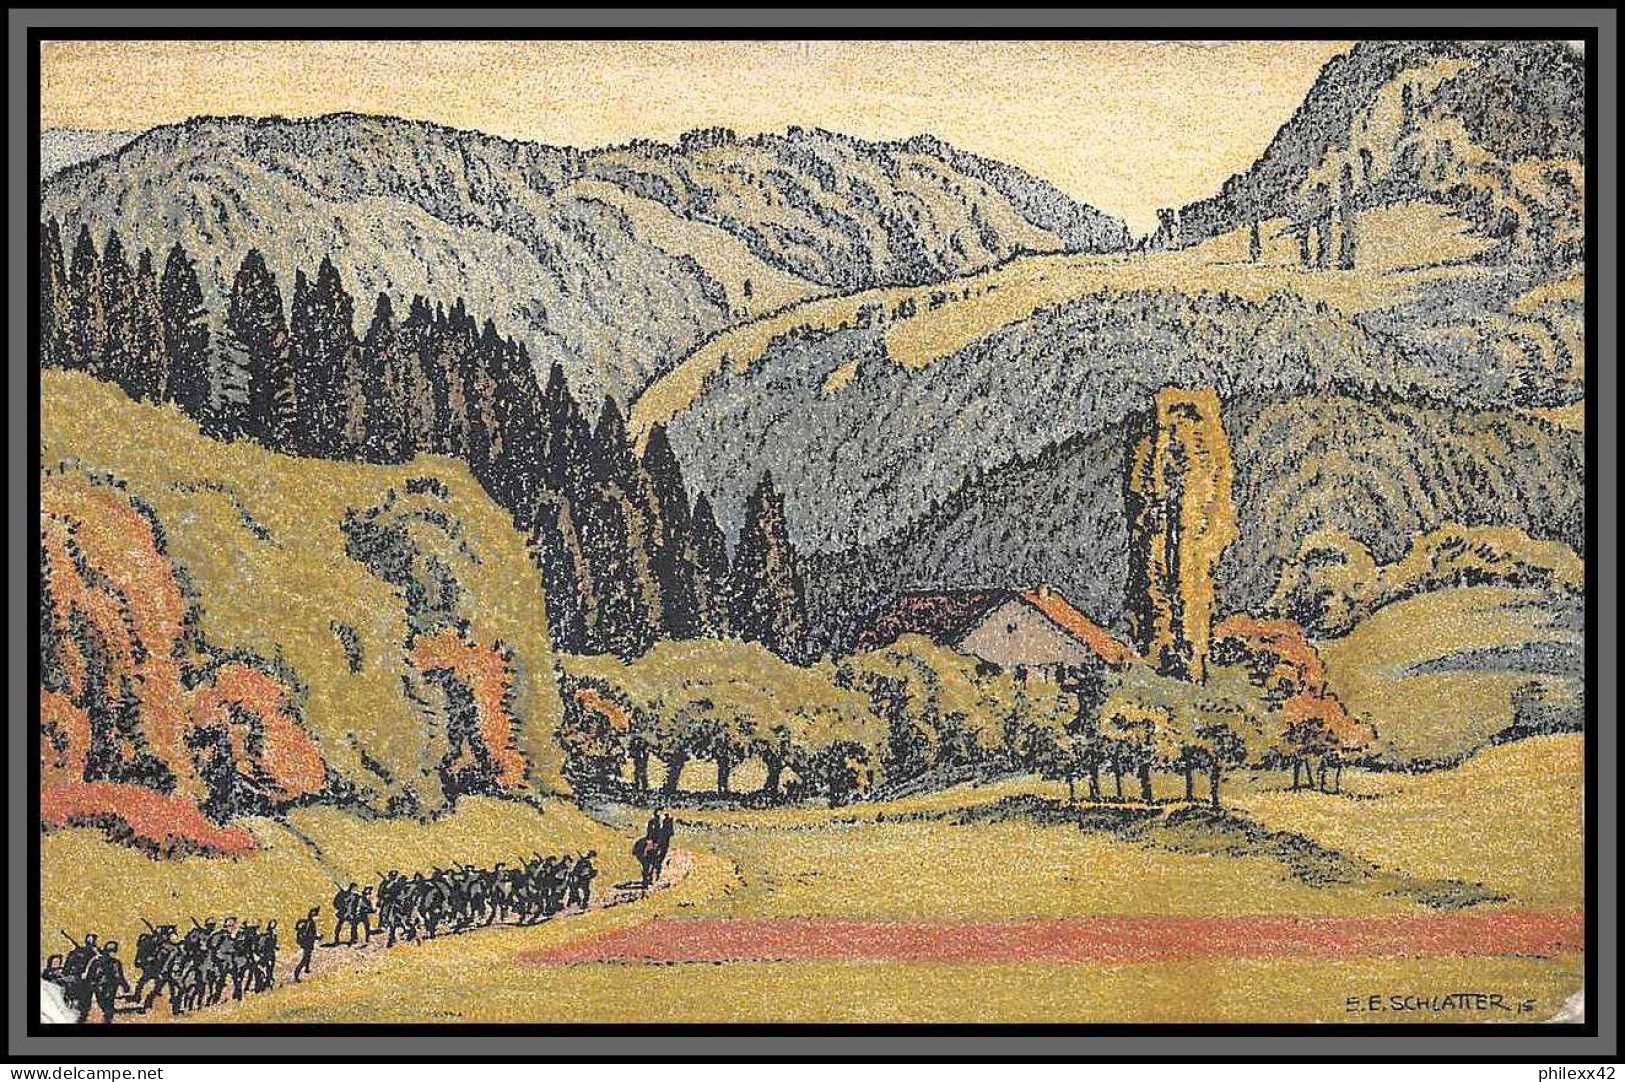 11334 Porrentruy 1925 Pour Sables D'ollone Carte Postale Pro Juventute Vallée Du Jura Près De Fontenais Postcard Suisse  - Lettres & Documents